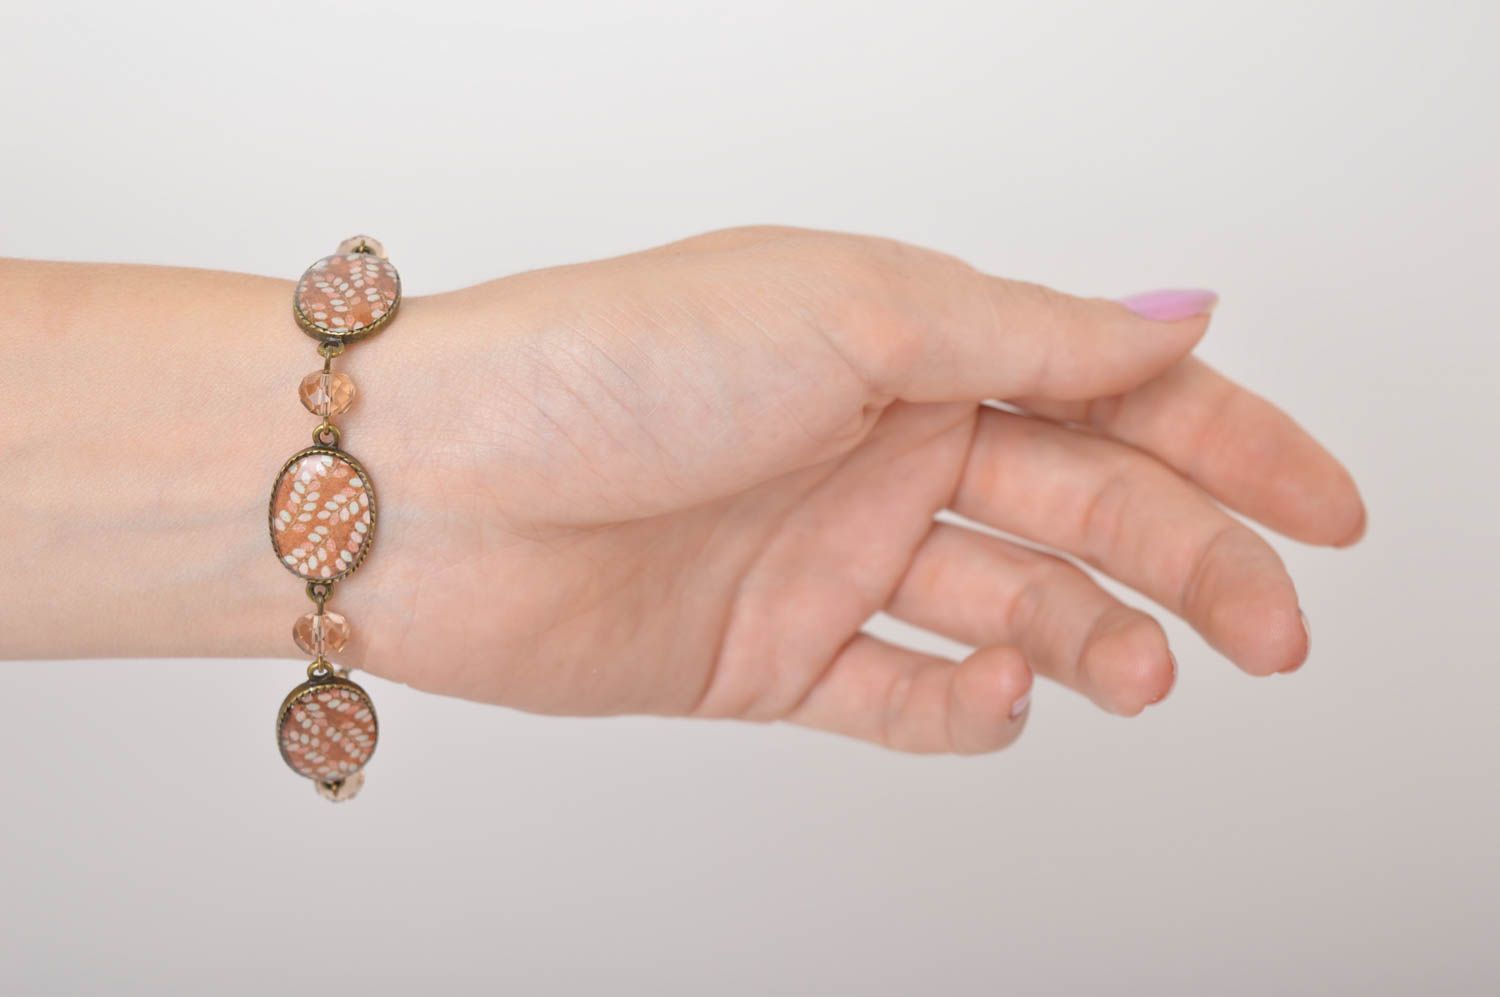 Handmade bracelet designer accessory gift ideas unusual gift resin bracelet photo 5